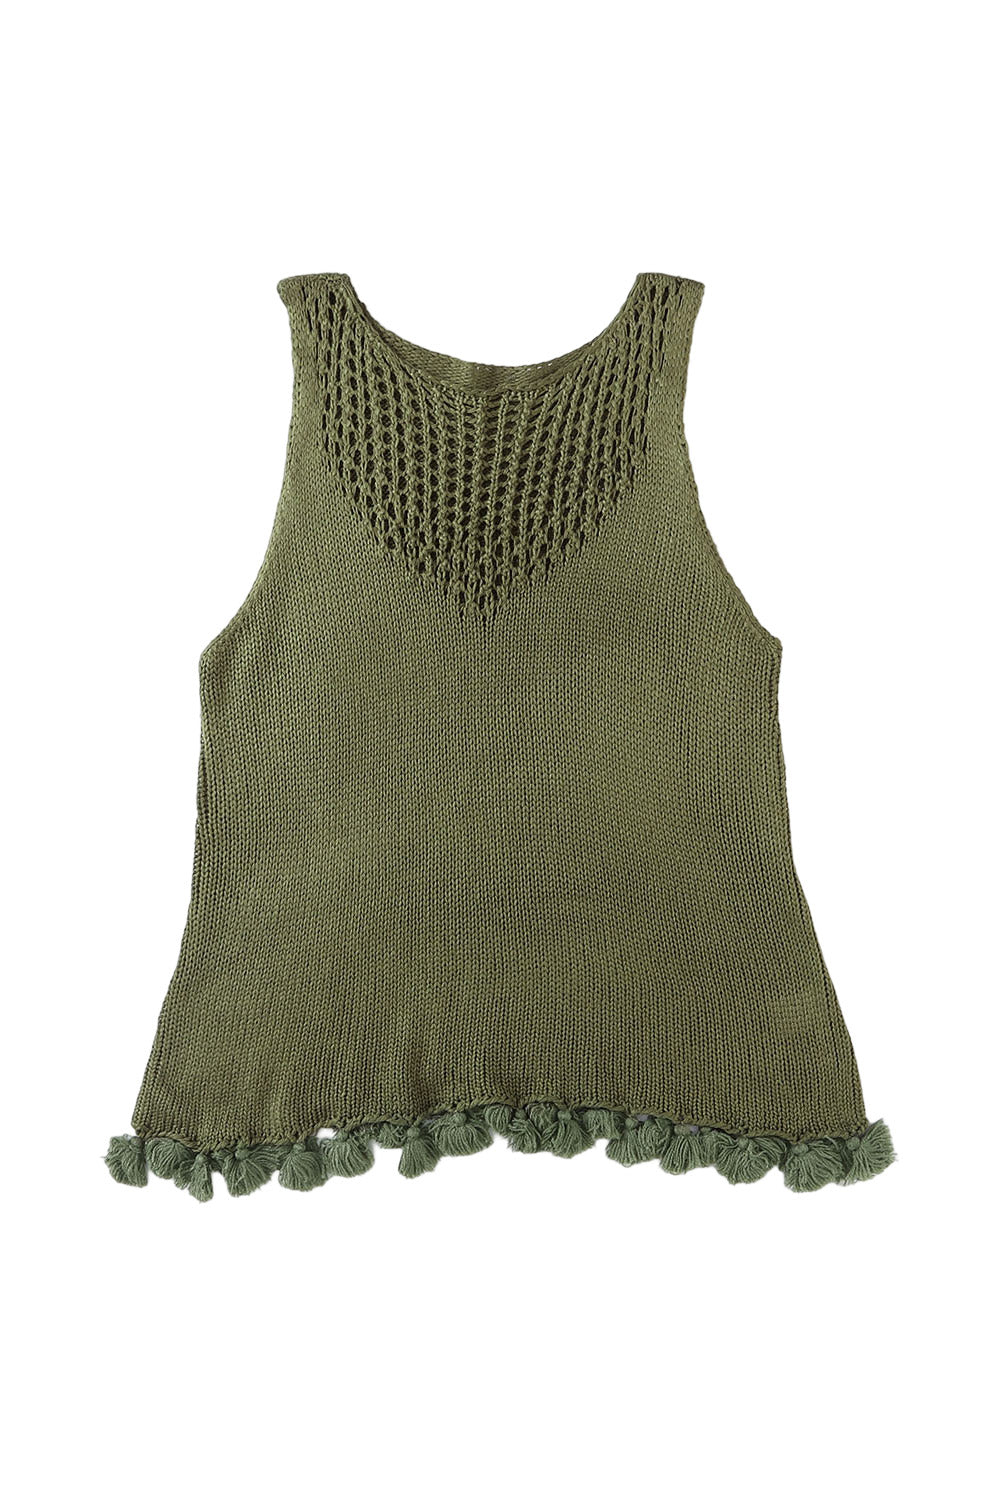 Débardeur vert en tricot ajouré au crochet à pompons